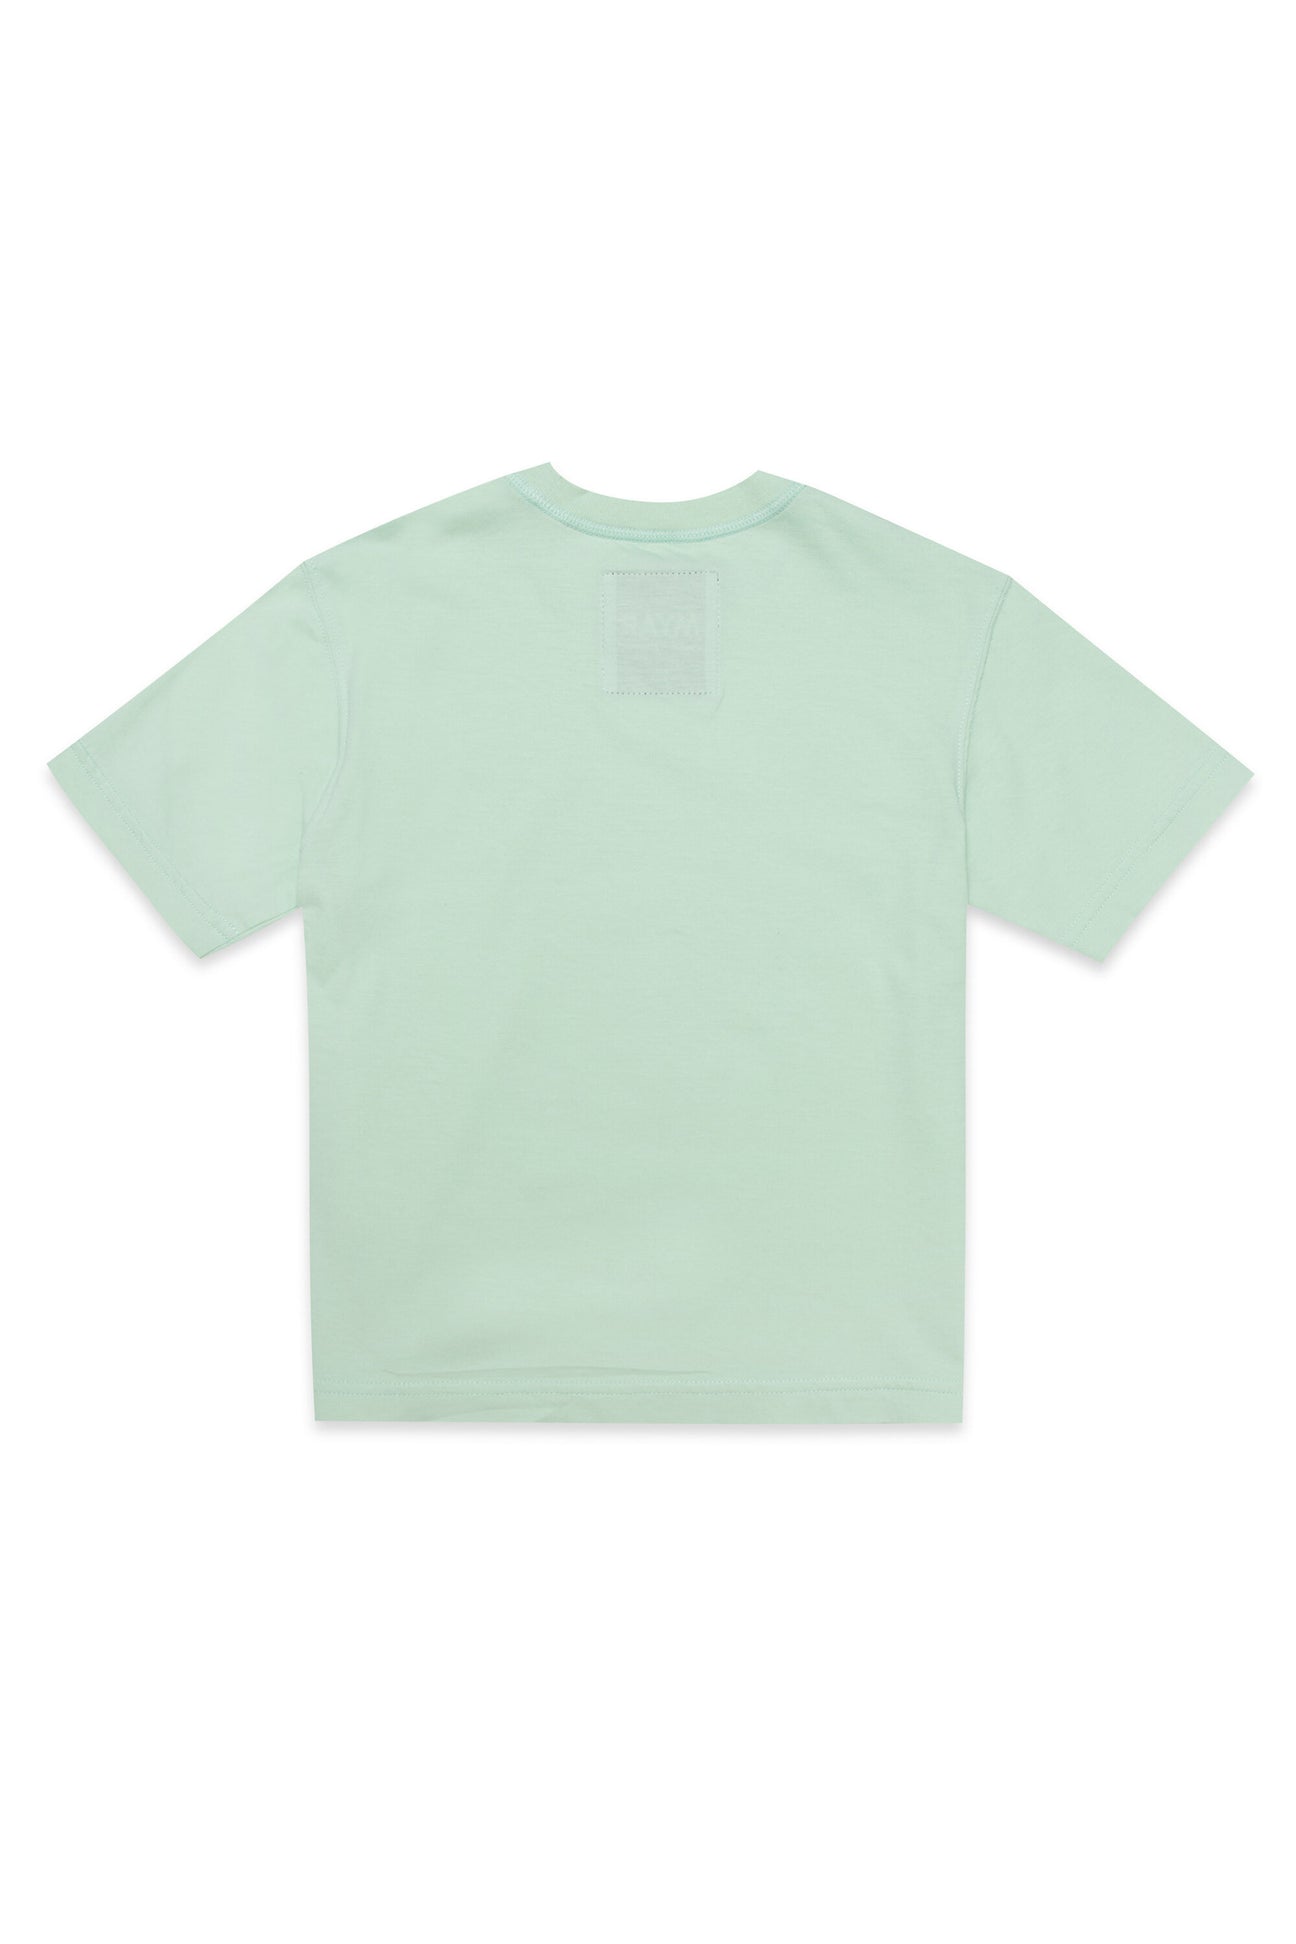 T-shirt girocollo in tessuto deadstock verde con stampa digitale sul davanti T-shirt girocollo in tessuto deadstock verde con stampa digitale sul davanti